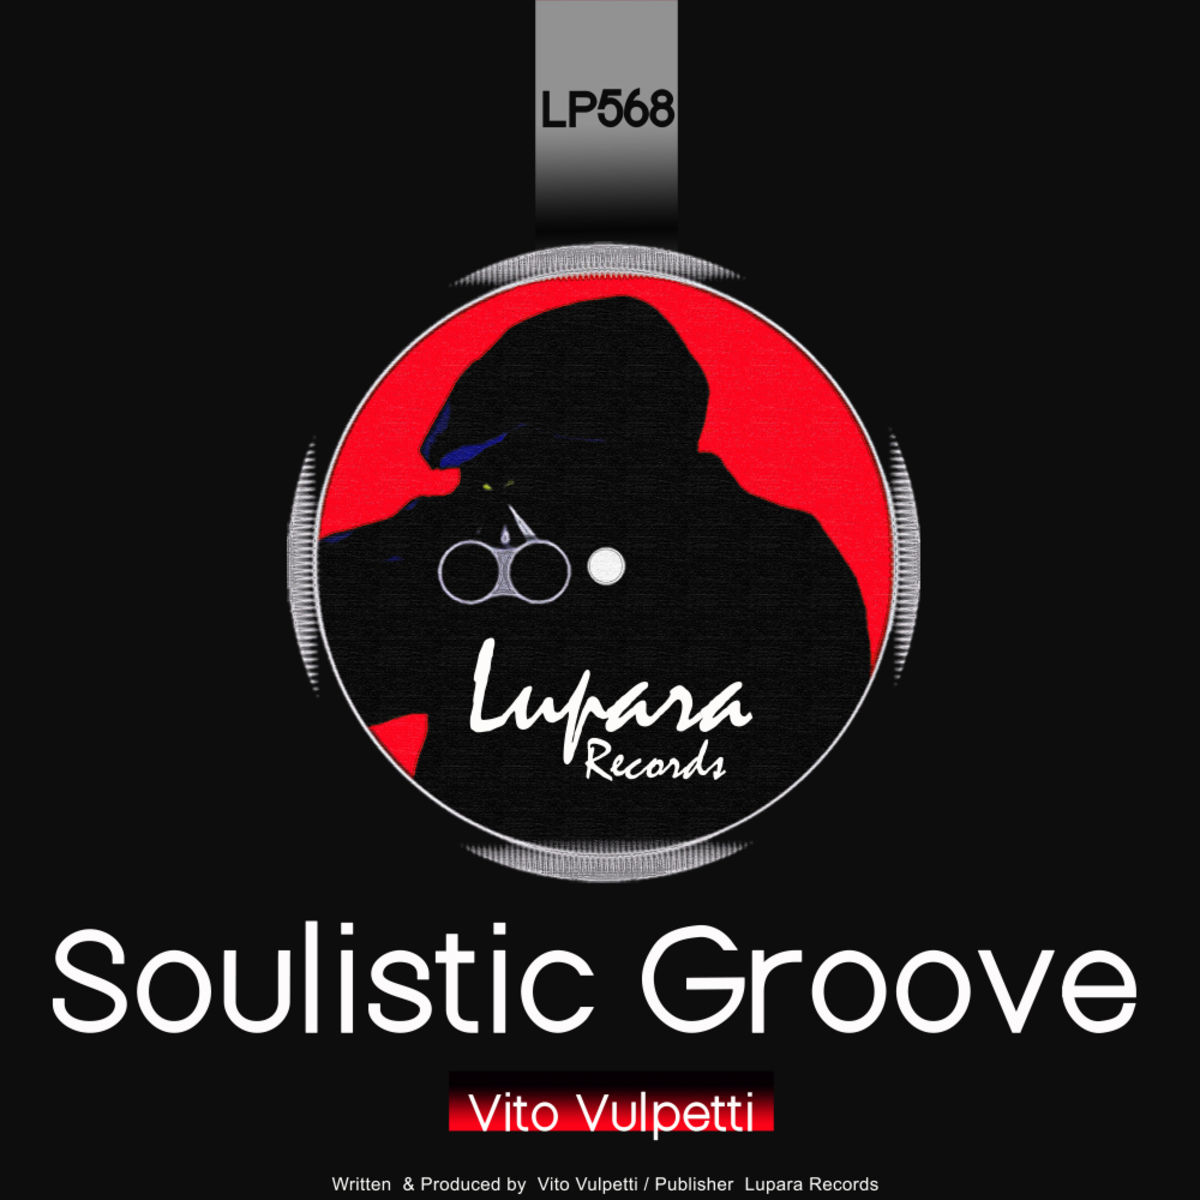 Vito Vulpetti - Soulistic Groove / Lupara Records